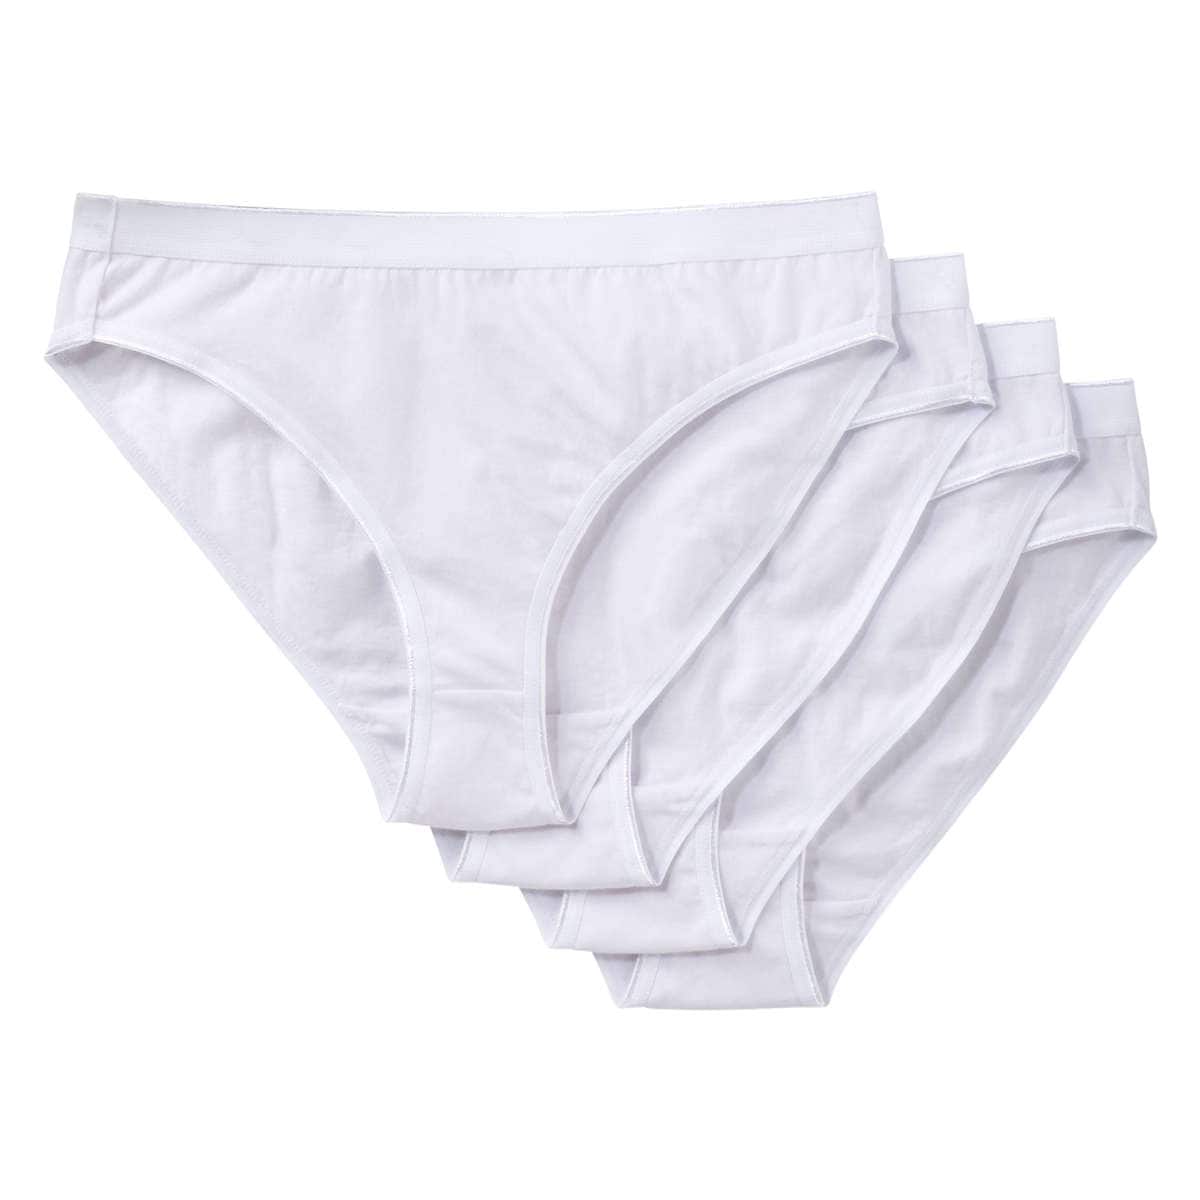  Women Hi Cut Underwear